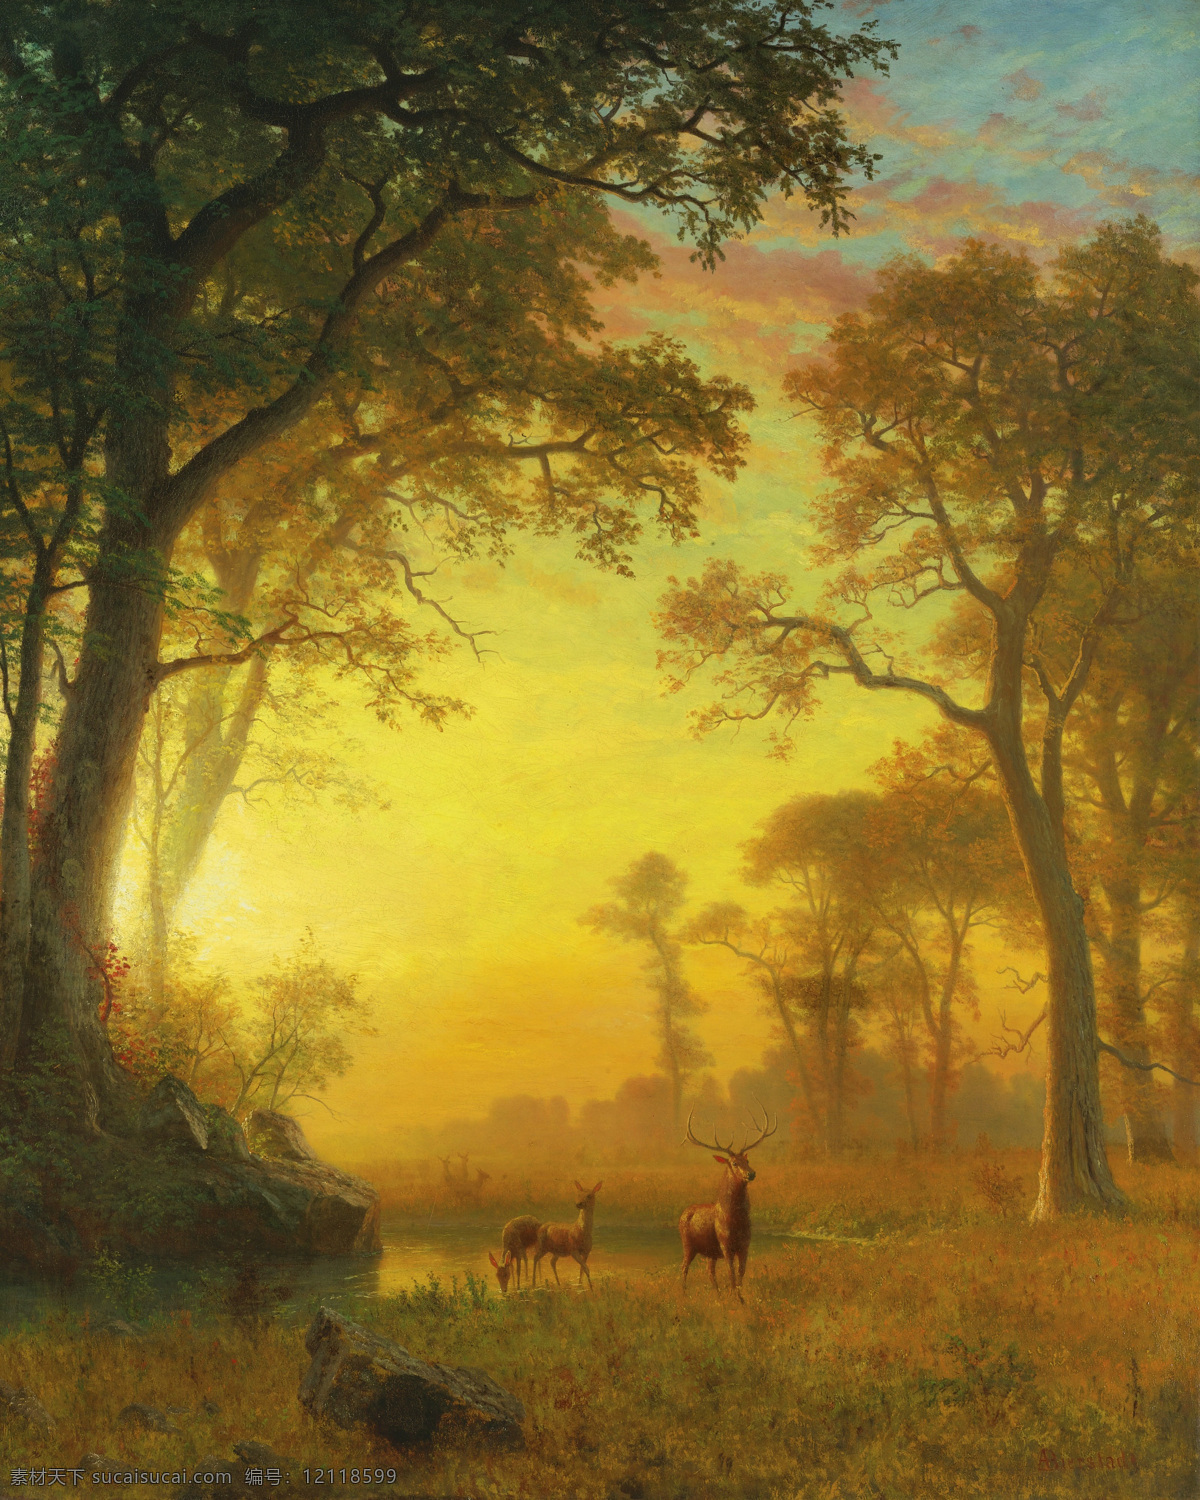 比尔 史 伯特 作品 阿尔贝特 森林 美国画家 鹿 哈德逊河学院 景观艺术 自然 私人收藏 河 日出 绘画书法 文化艺术